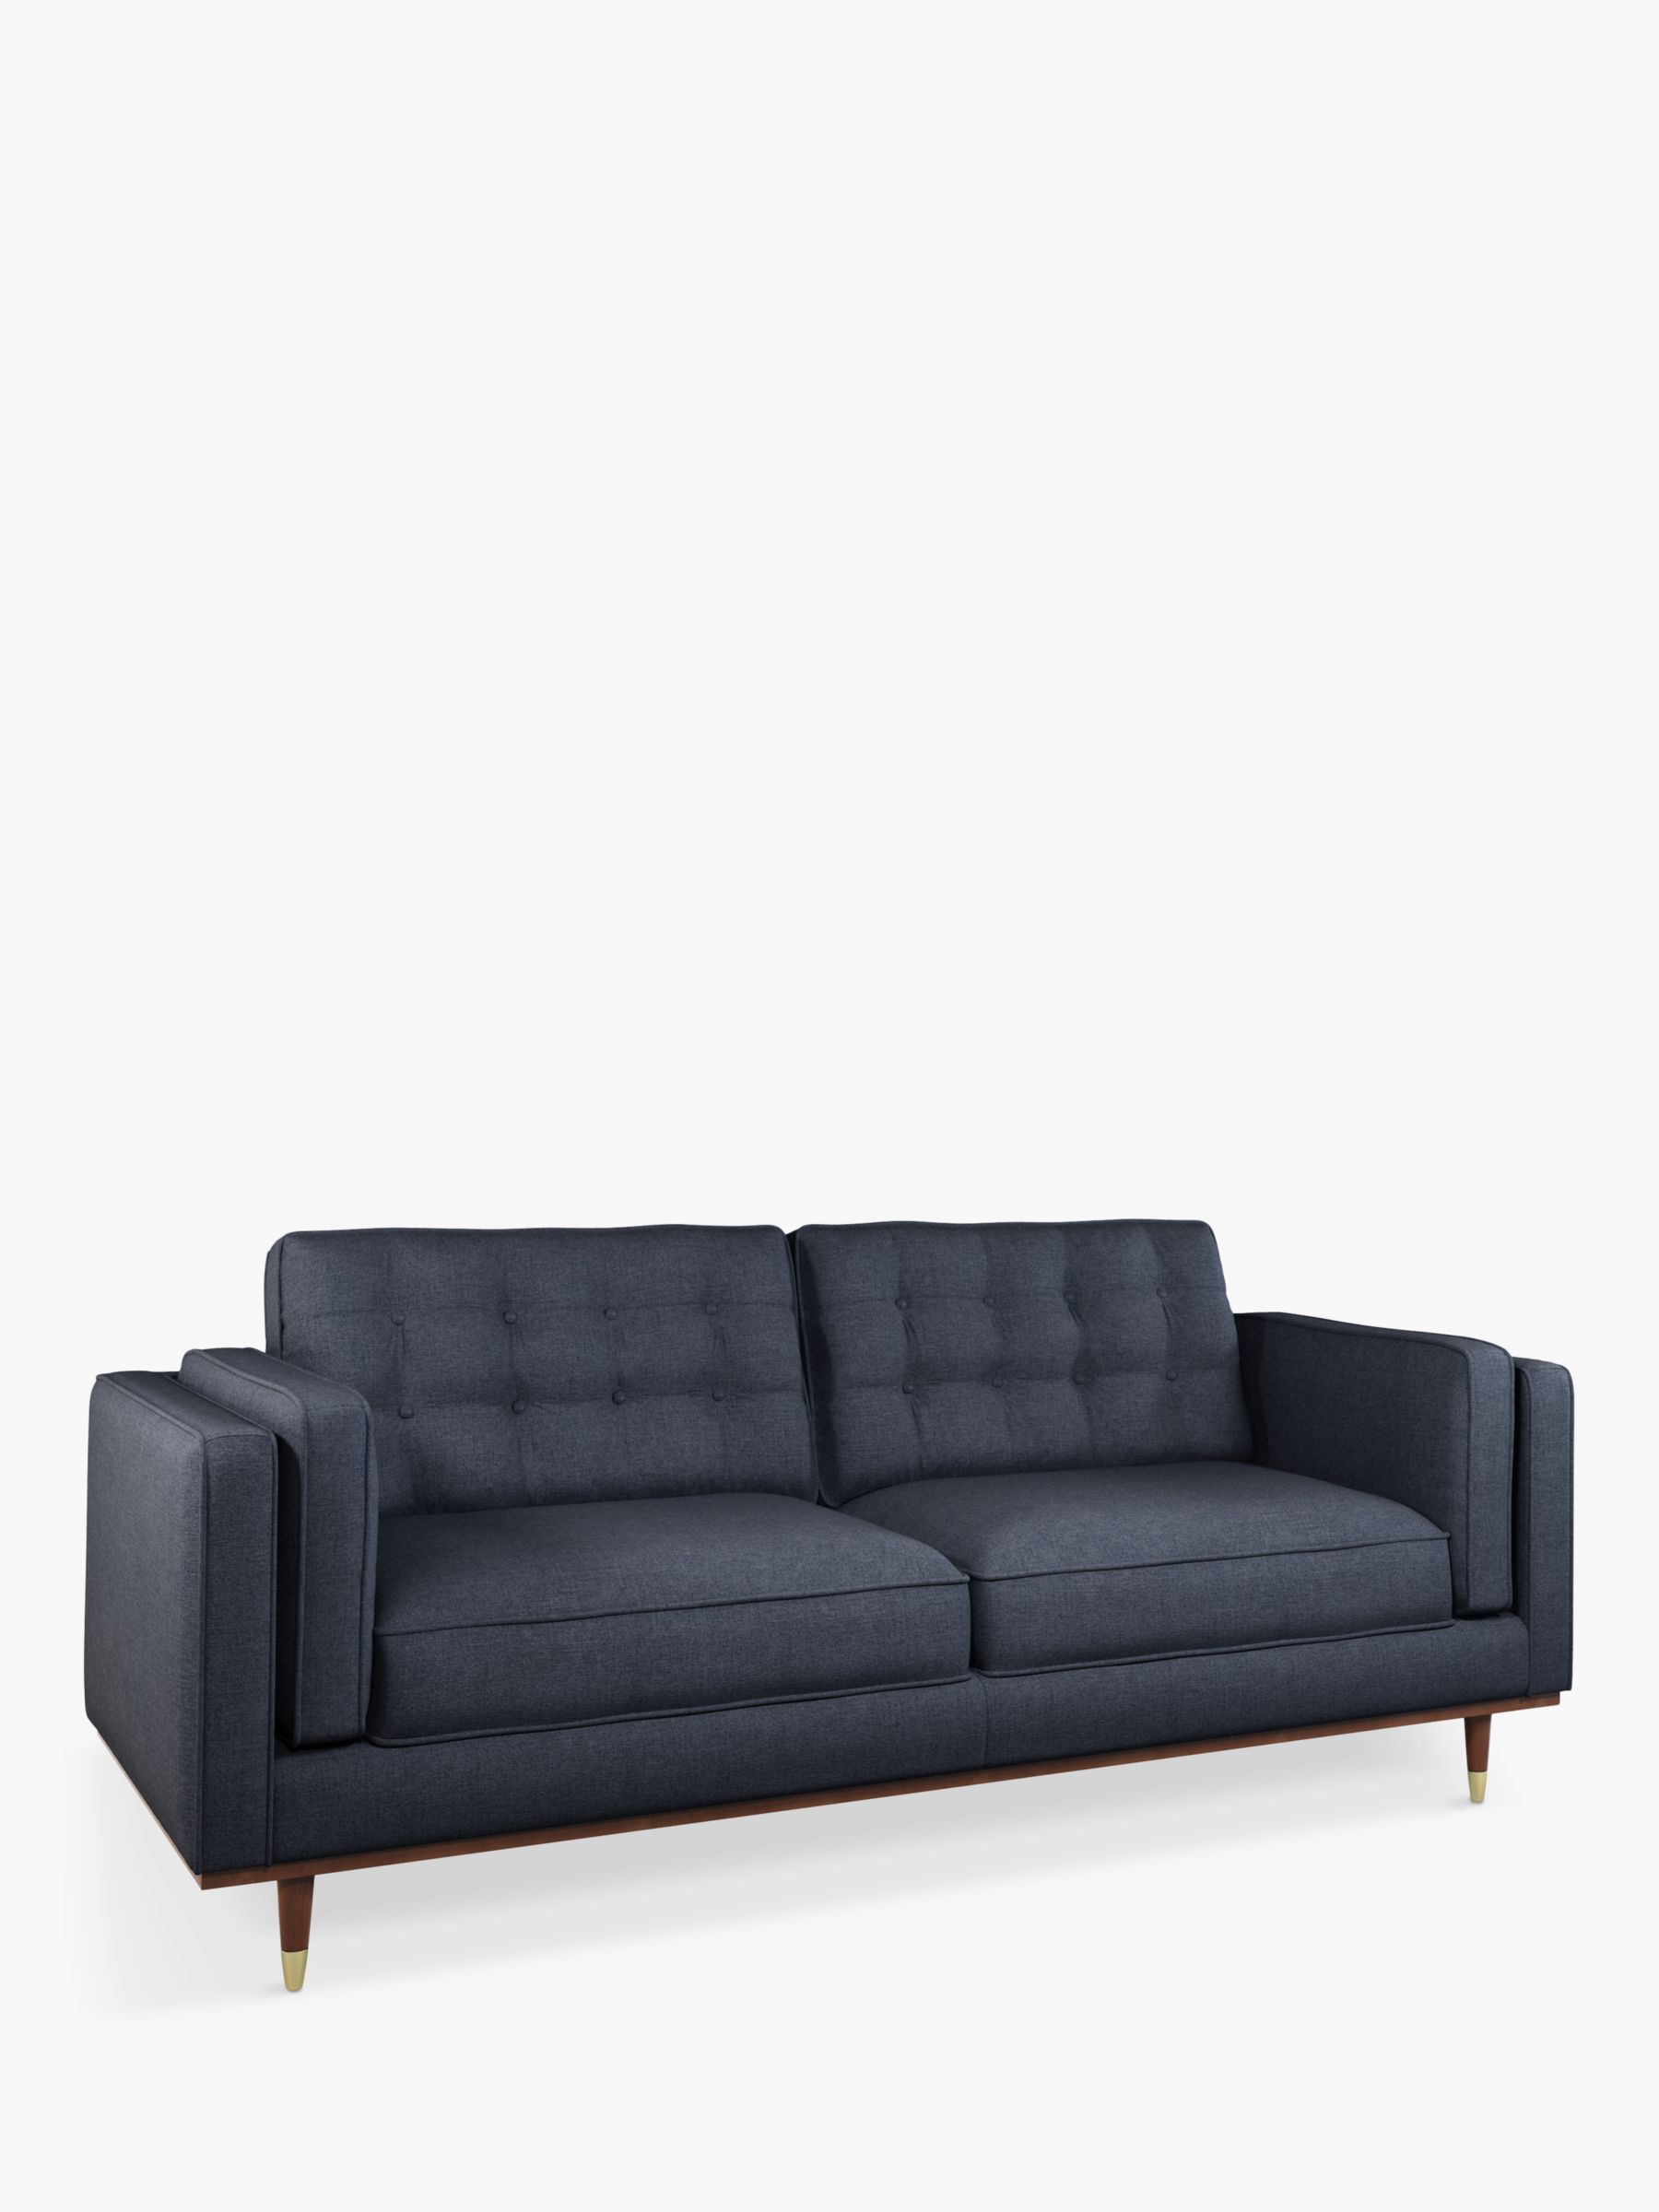 Lyon Range, John Lewis + Swoon Lyon Large 3 Seater Sofa, Dark Leg, Denim Weave